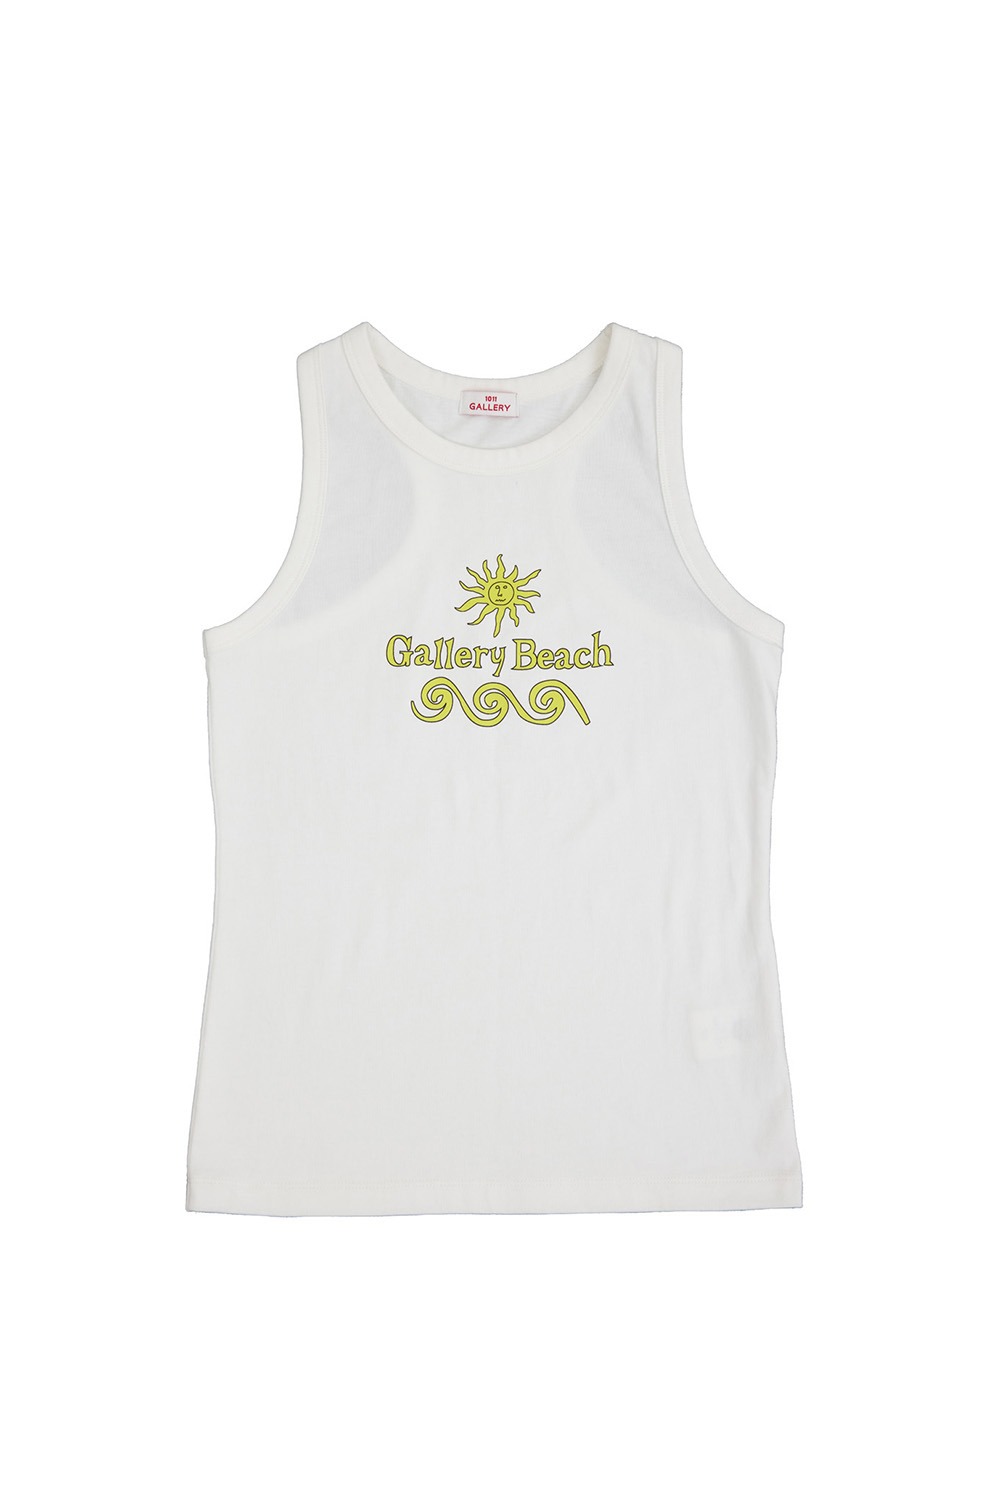 Gallery Beach Sleeveless T-shirt - White